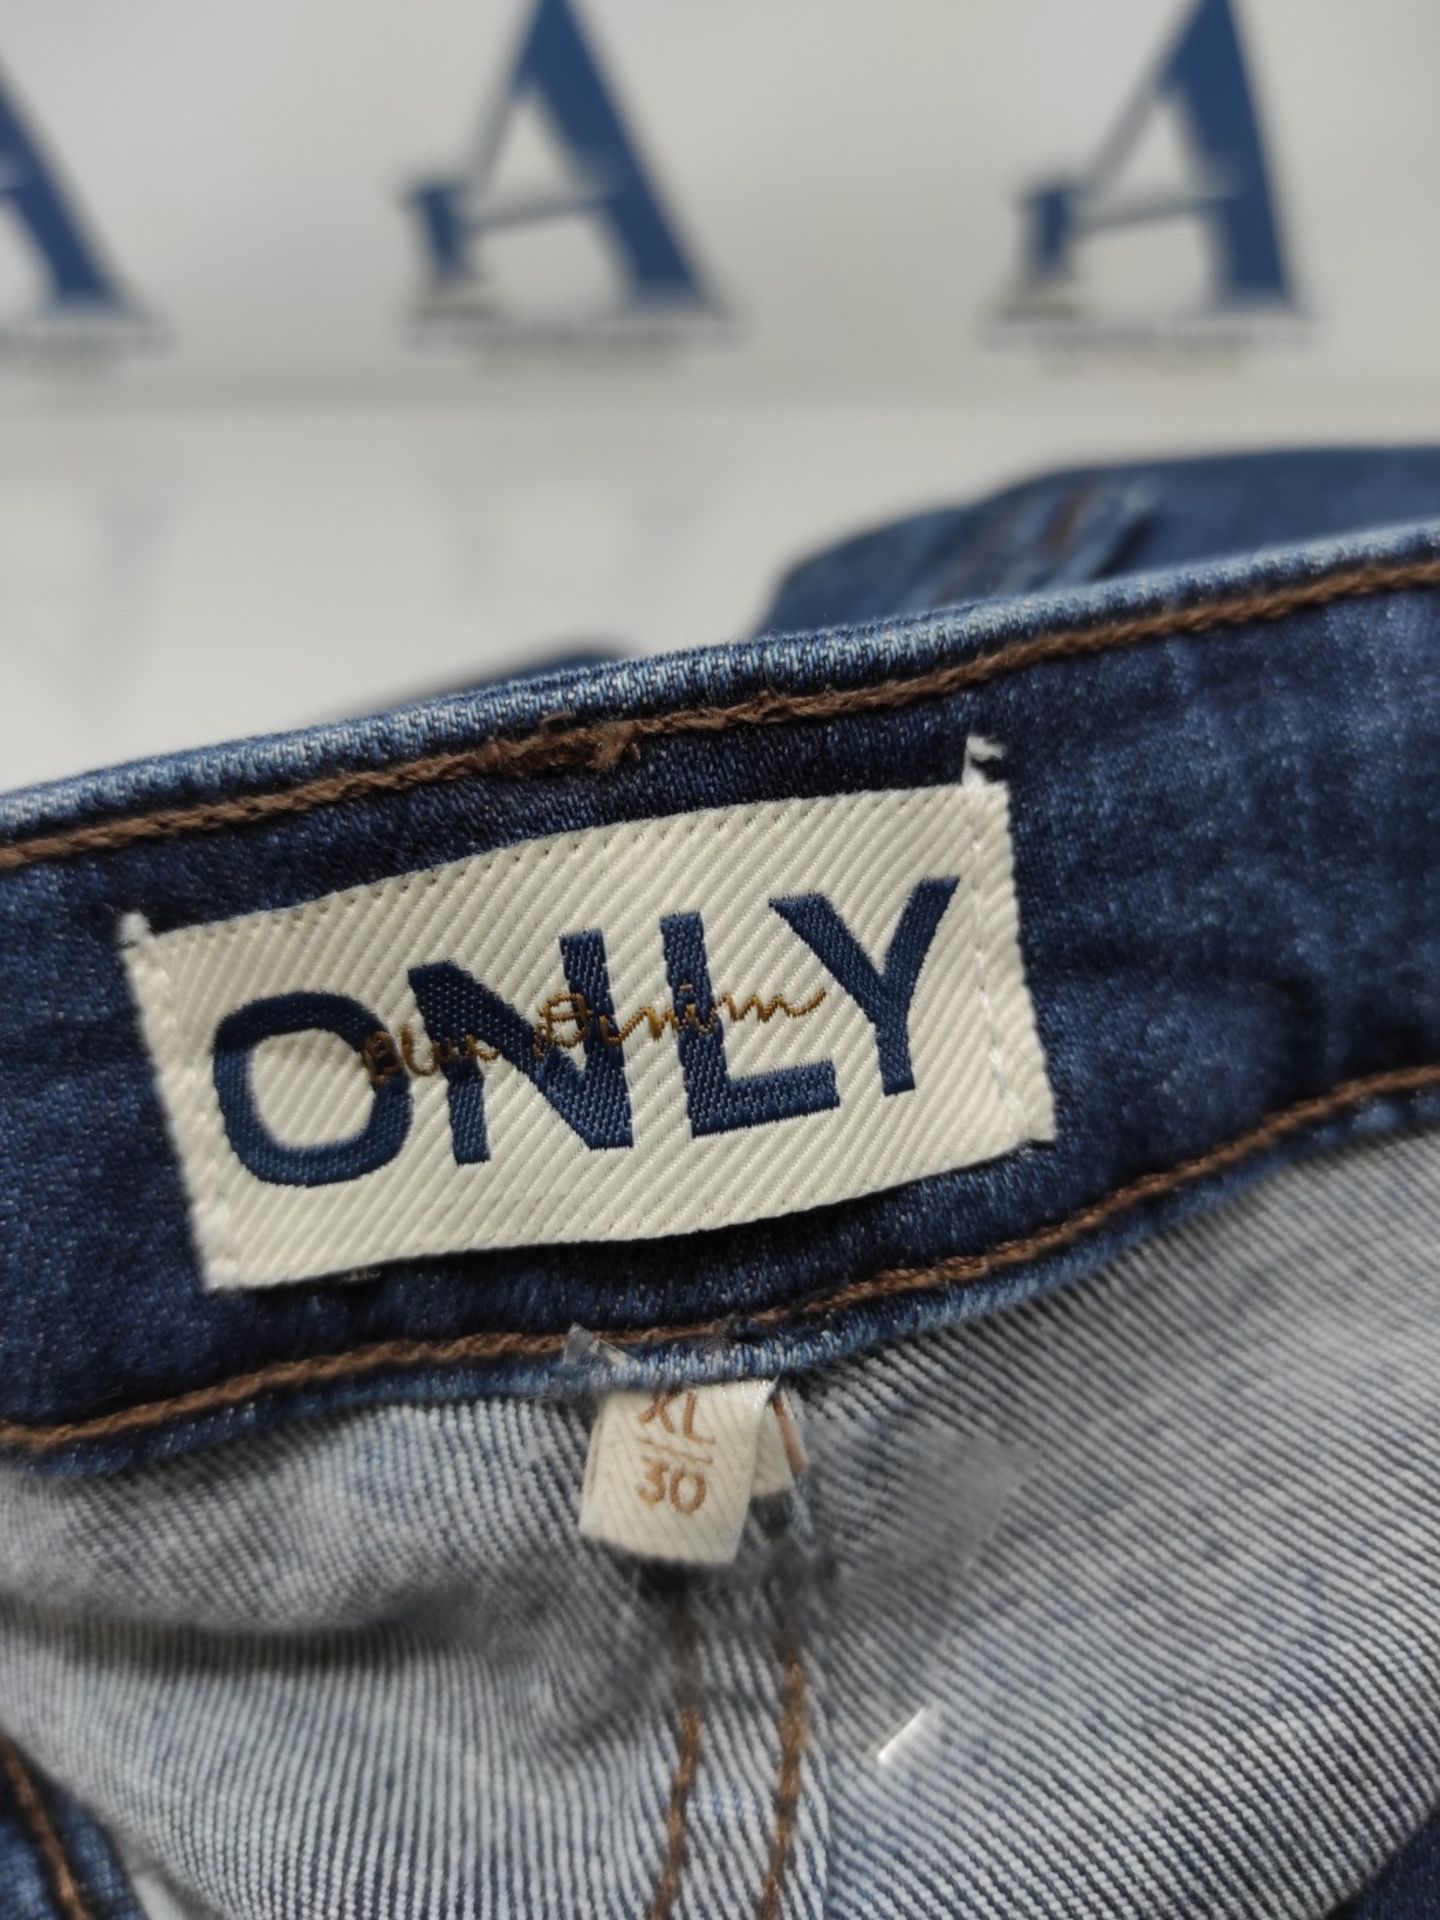 ONLY Women's Jeans, 30XL - Bild 3 aus 3